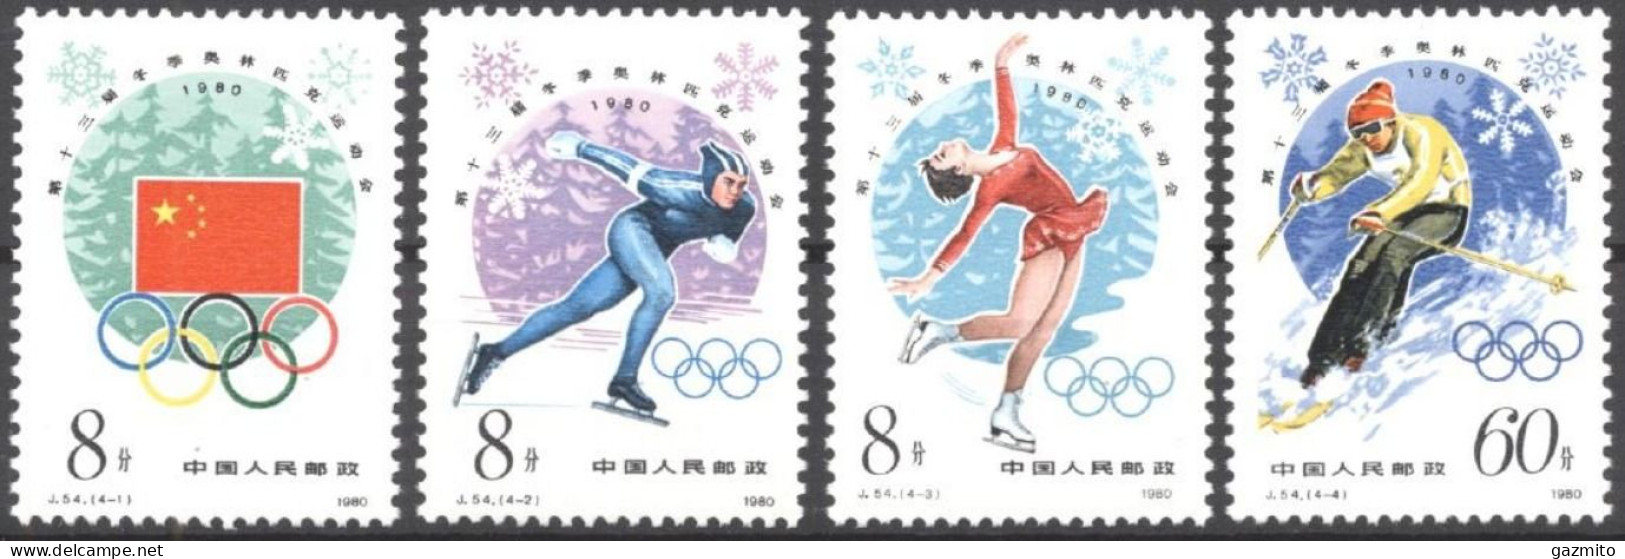 China 1980, Winter Olympic Games, Lake Placid, Skating, Skiing, 4val - Neufs